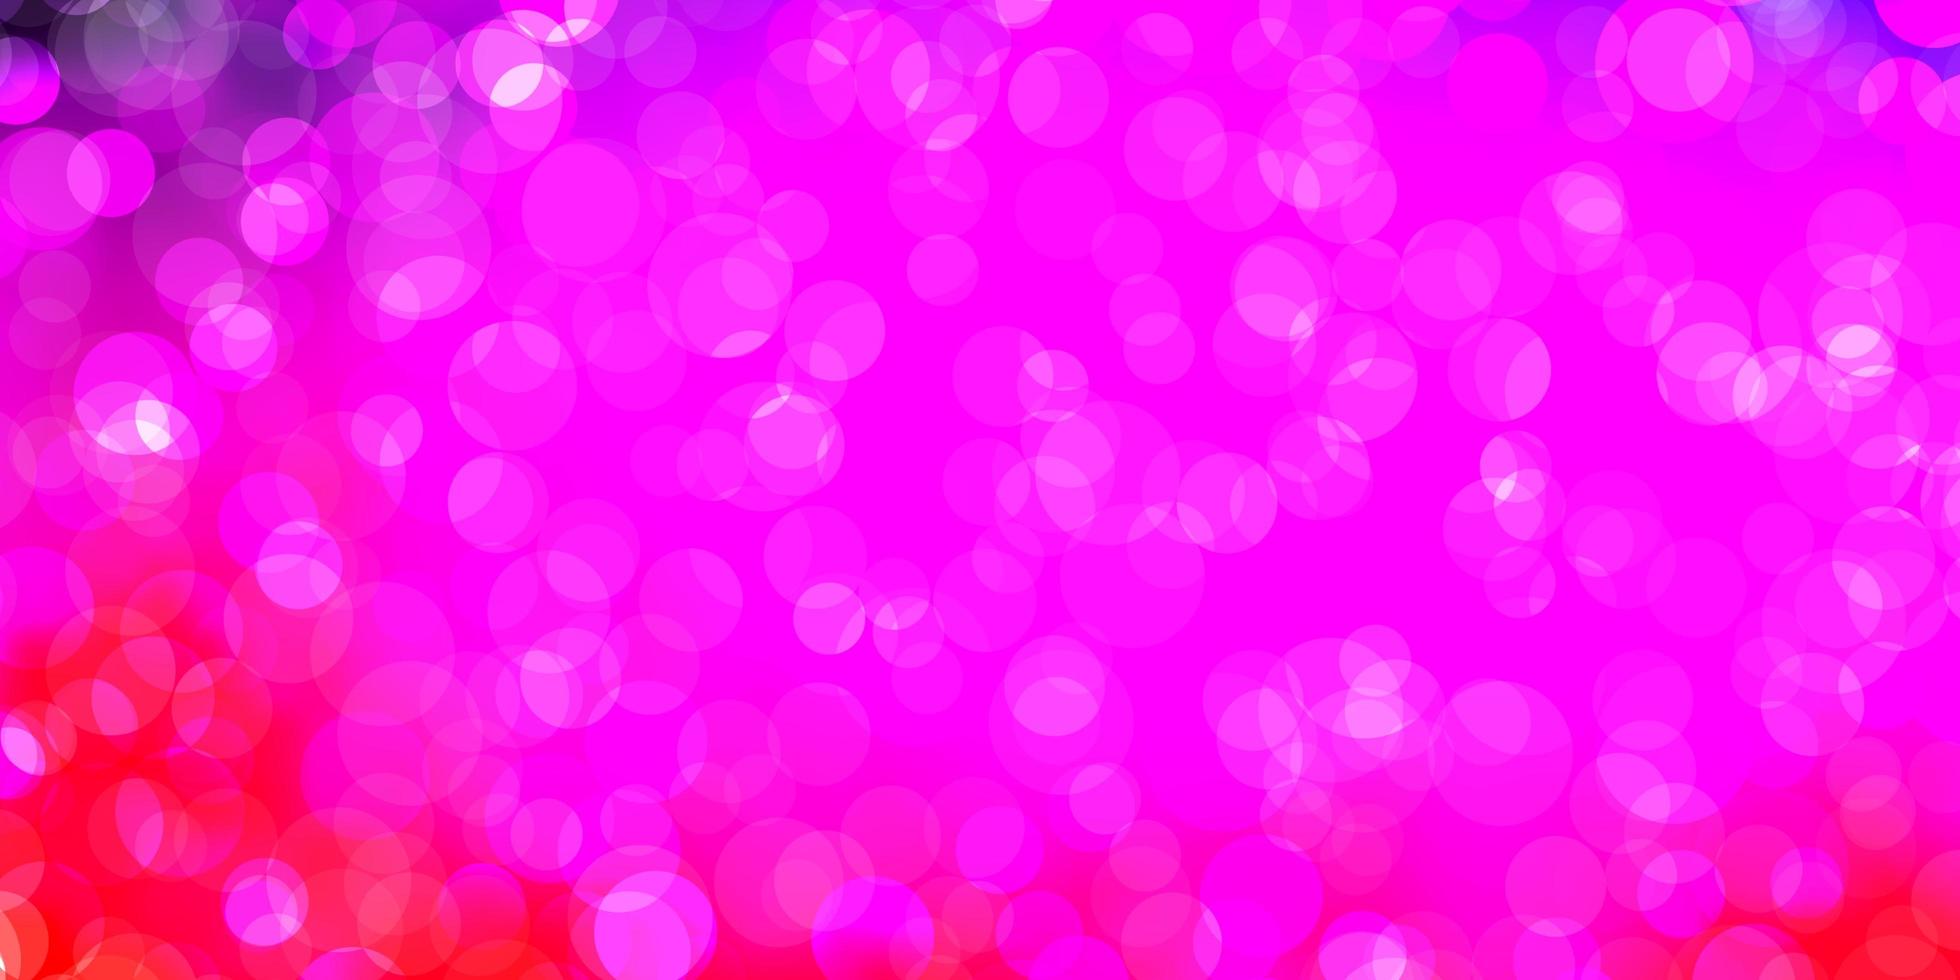 sfondo vettoriale viola chiaro, rosa con macchie.